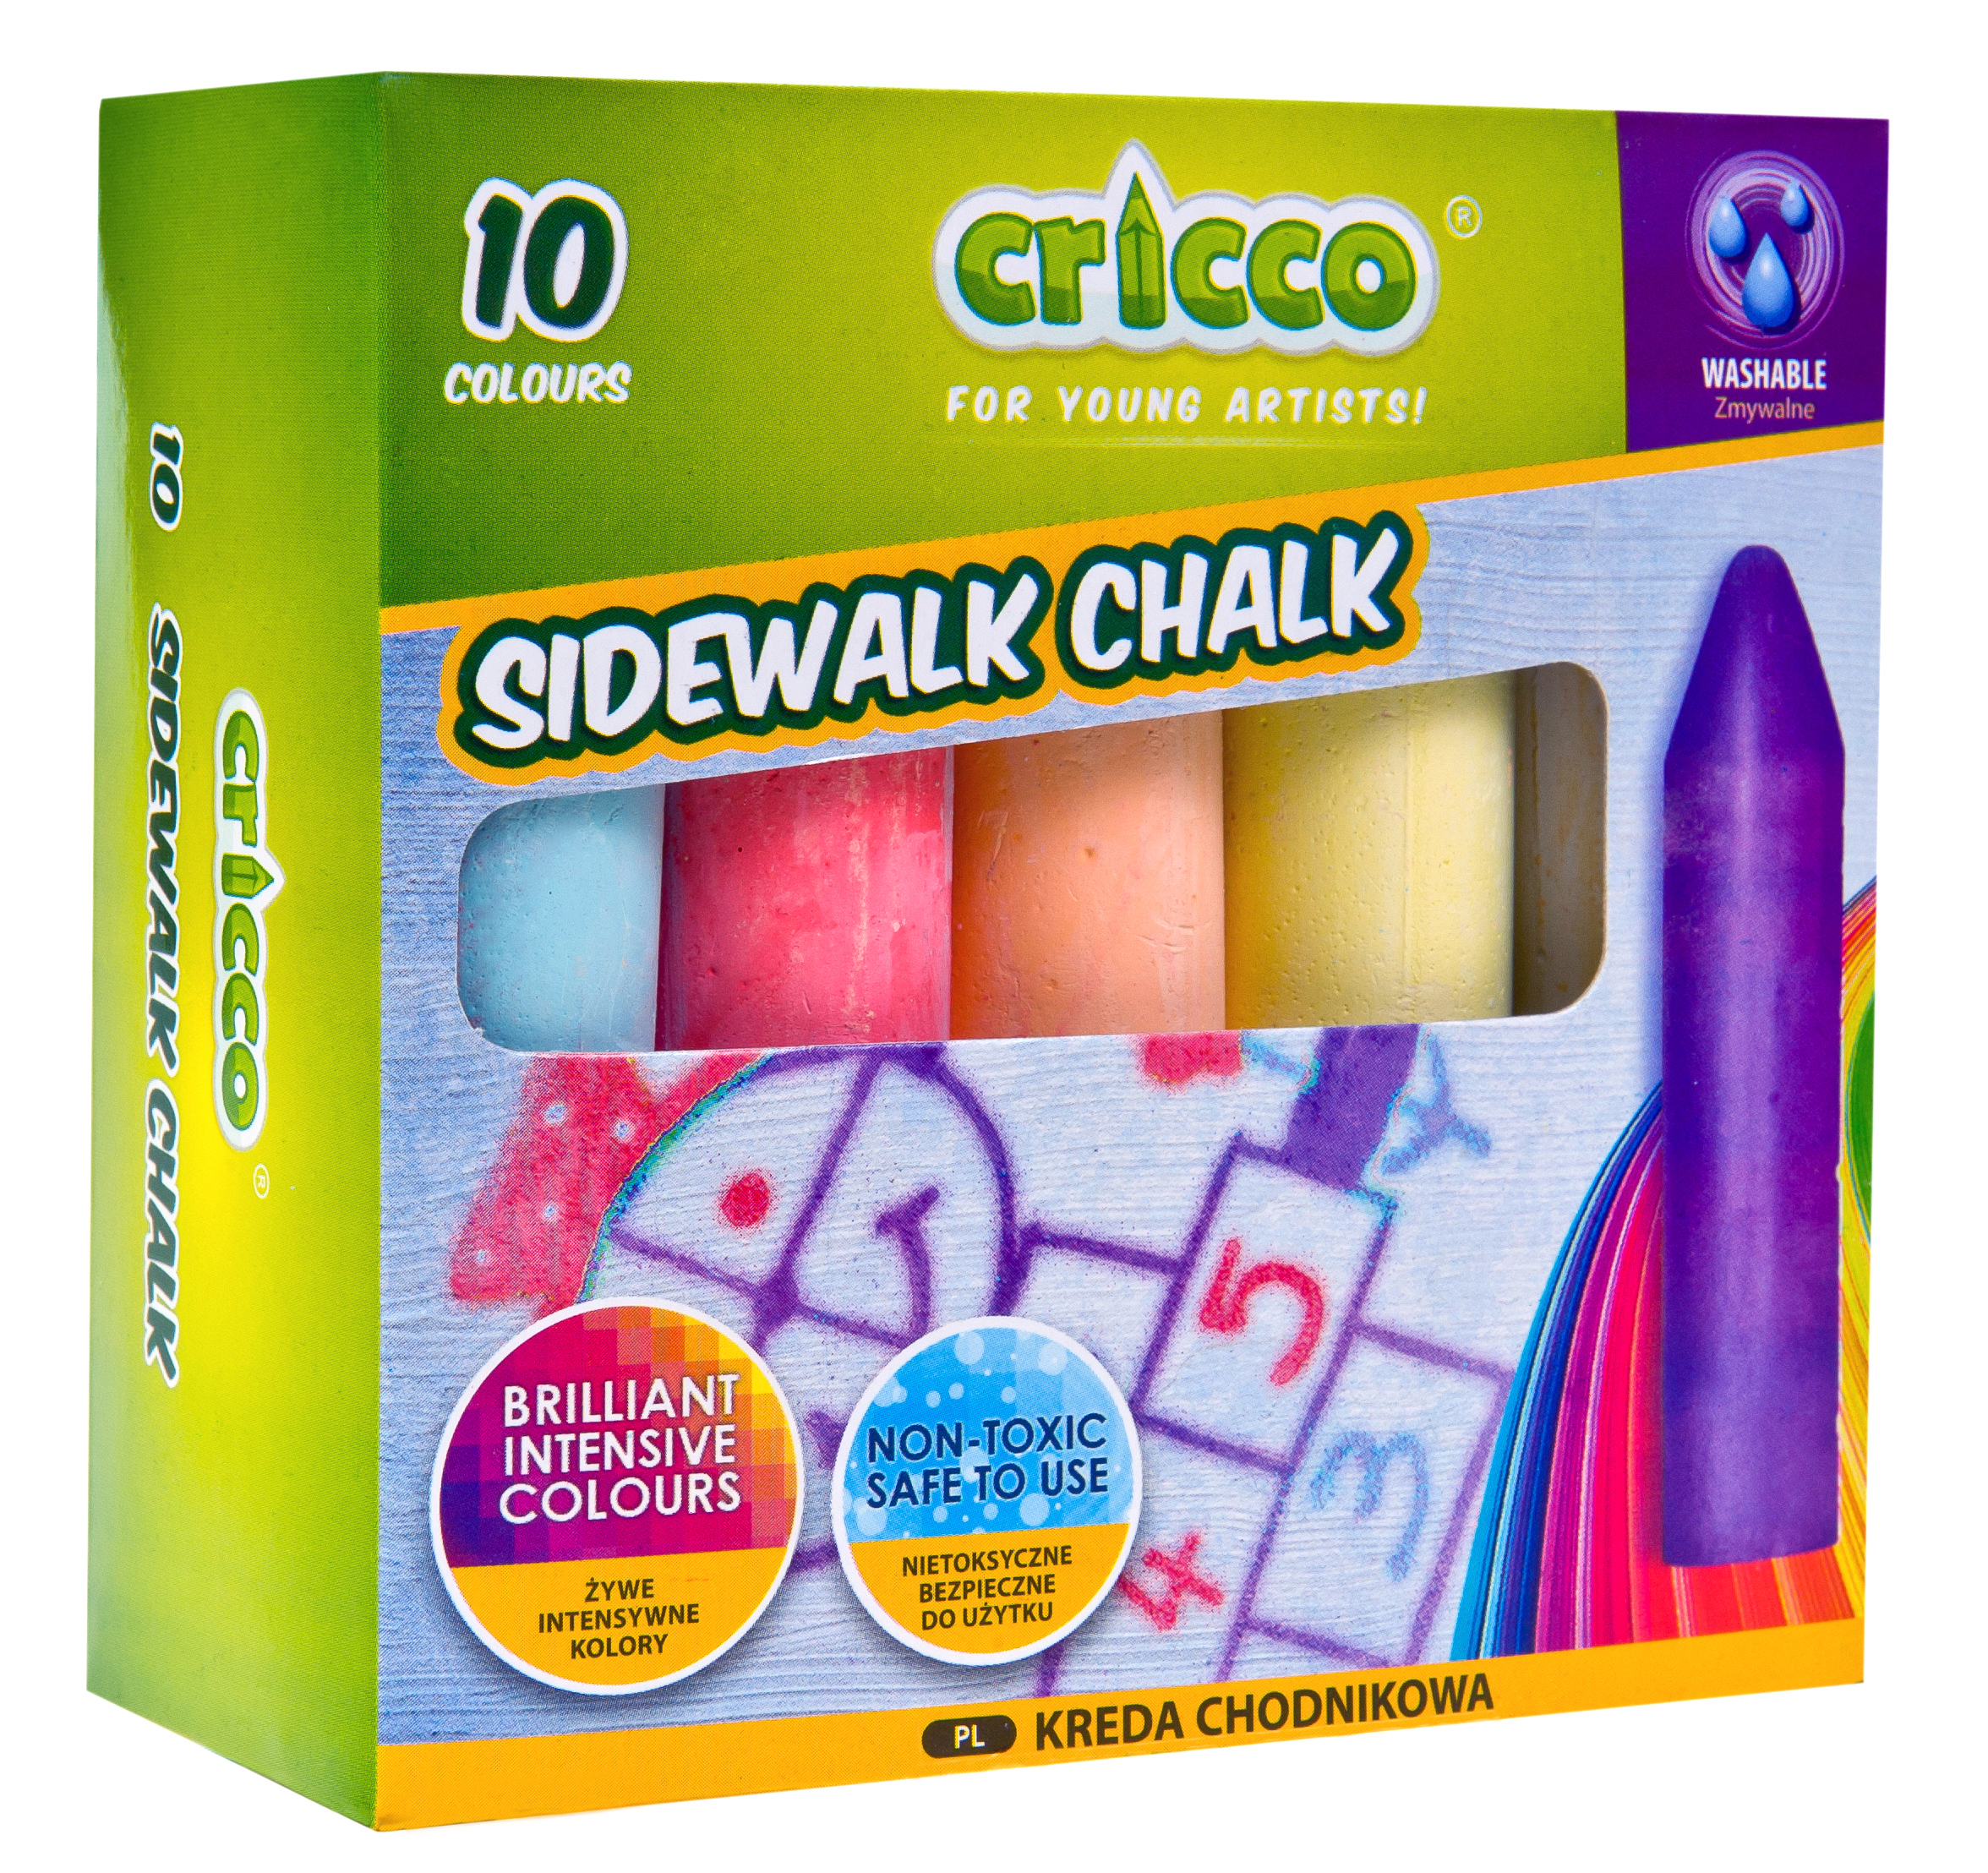 Sidewalk chalk Cricco